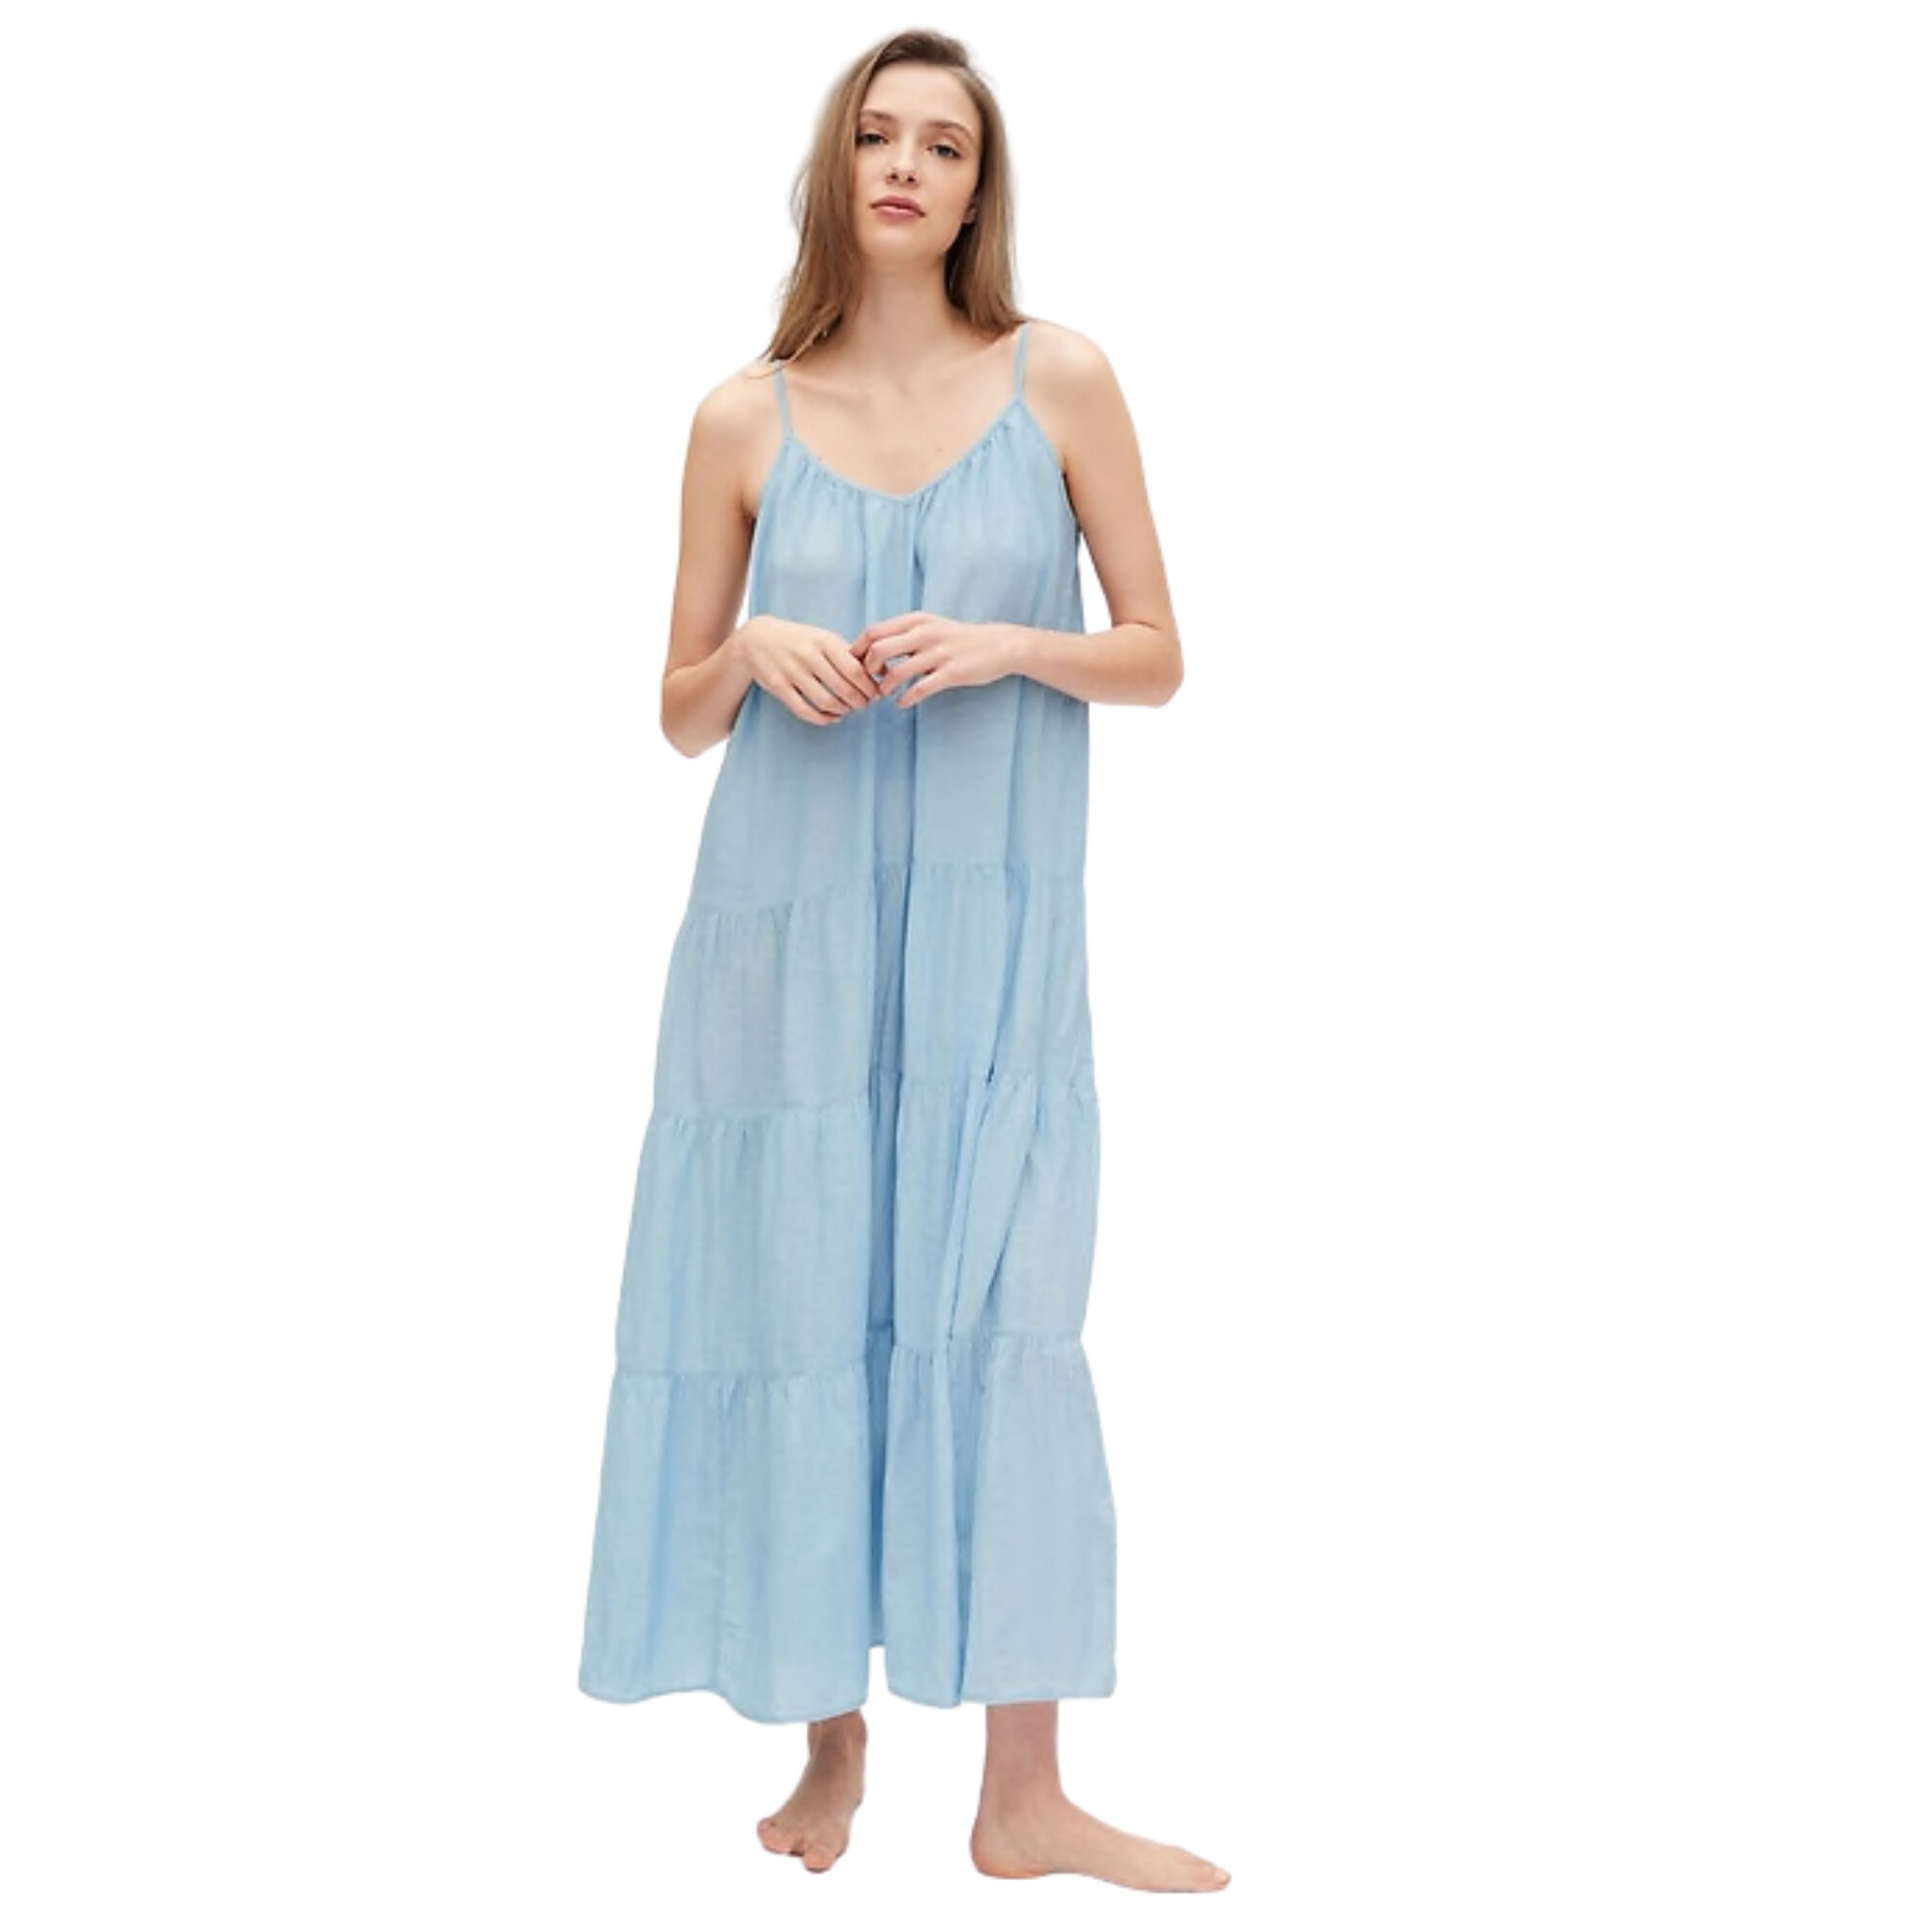 Dreamwell Crinkle Dress, Gap, $45 (machine wash)